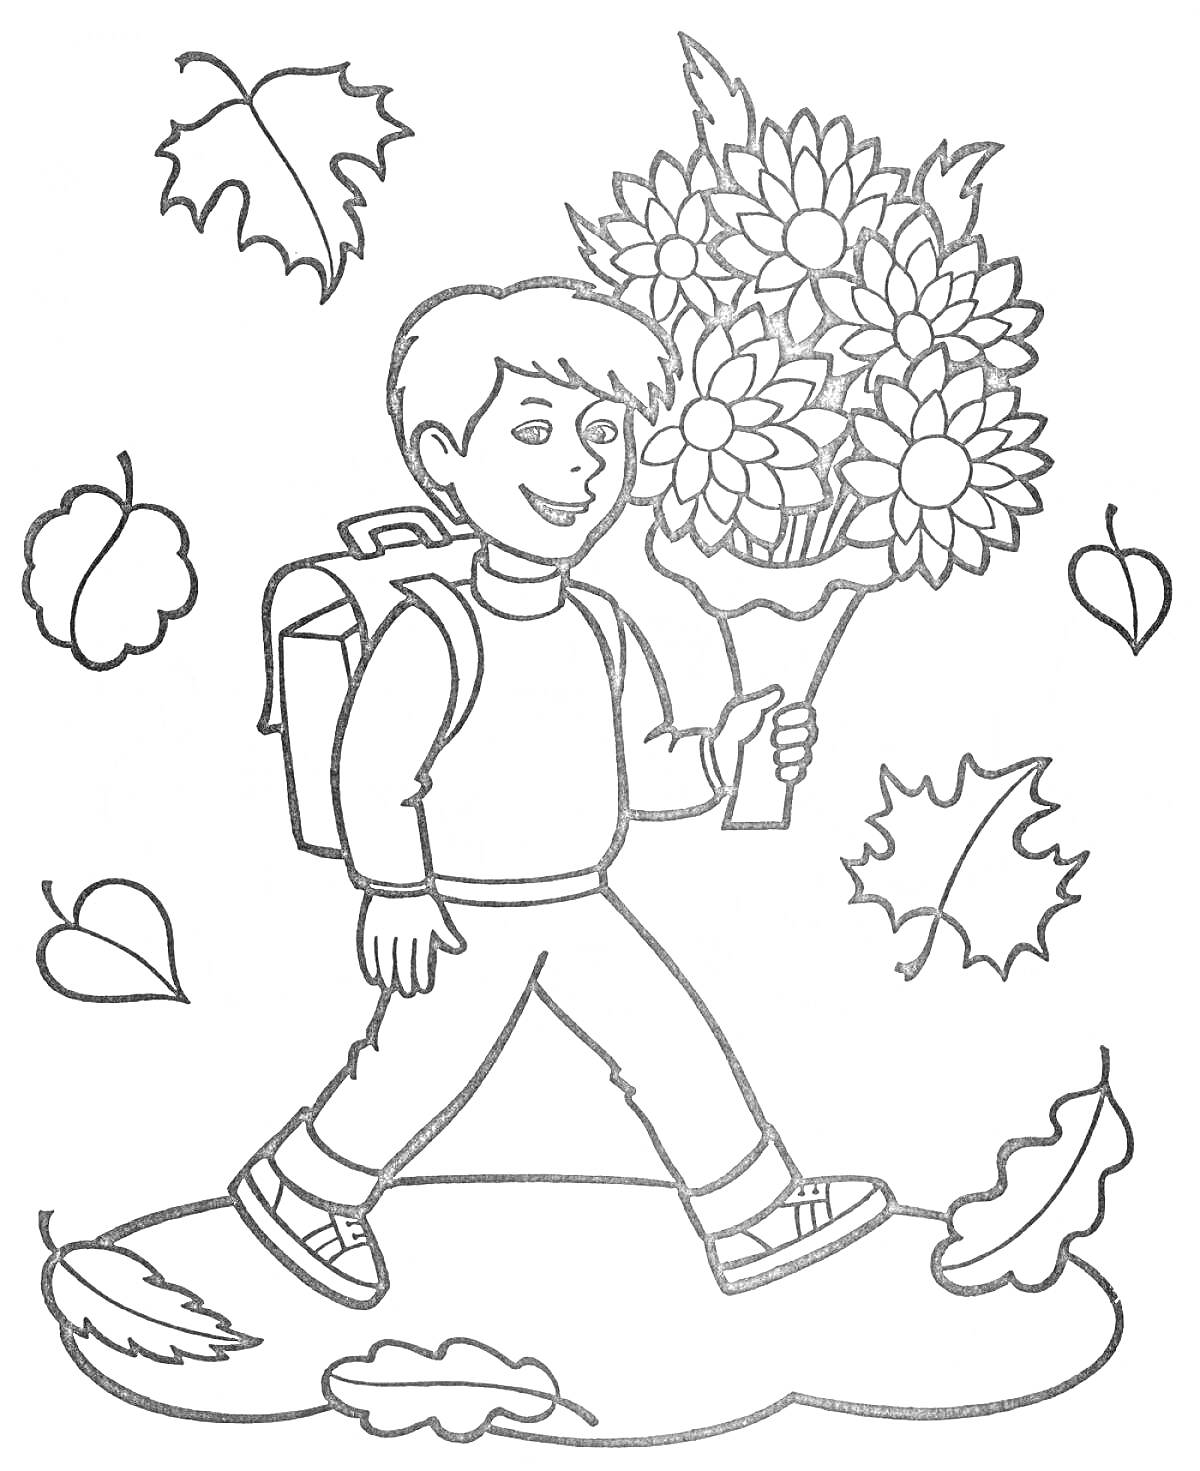 Мальчик с рюкзаком и букетом цветов, идёт среди осенних листьев